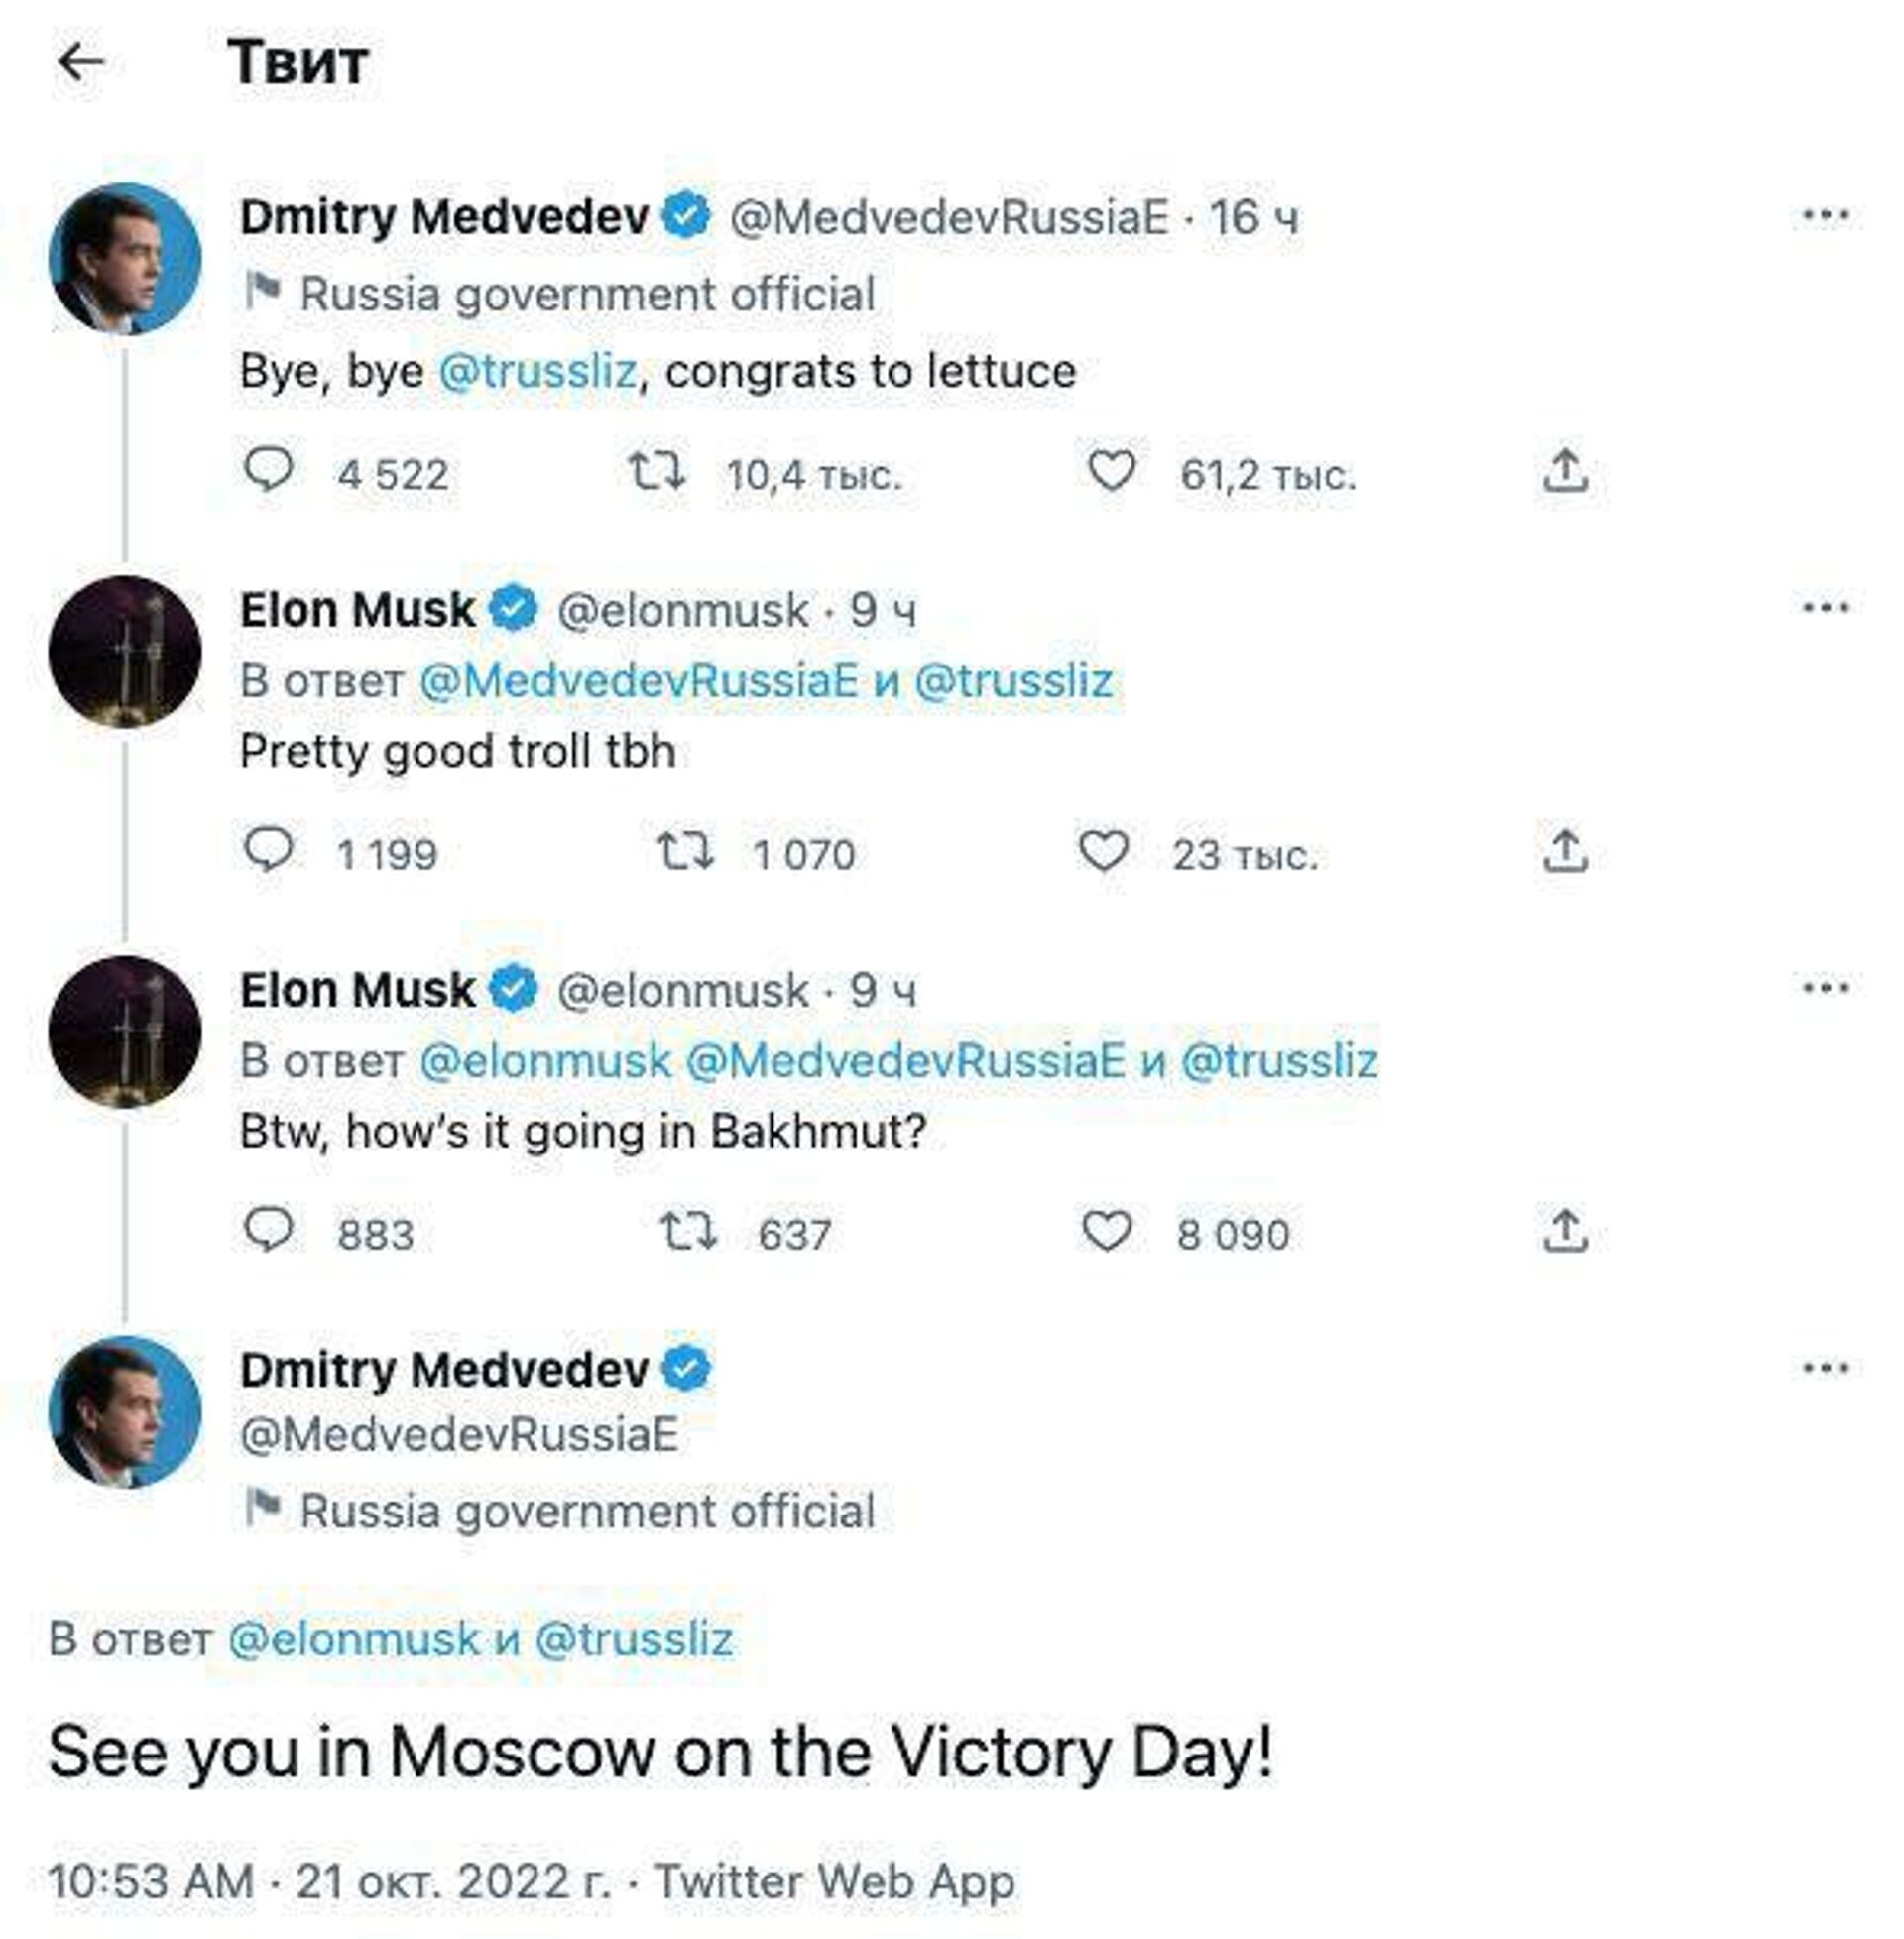 Диалог между Дмитрием Медведевым и Илоном Маском - Sputnik Узбекистан, 1920, 21.10.2022